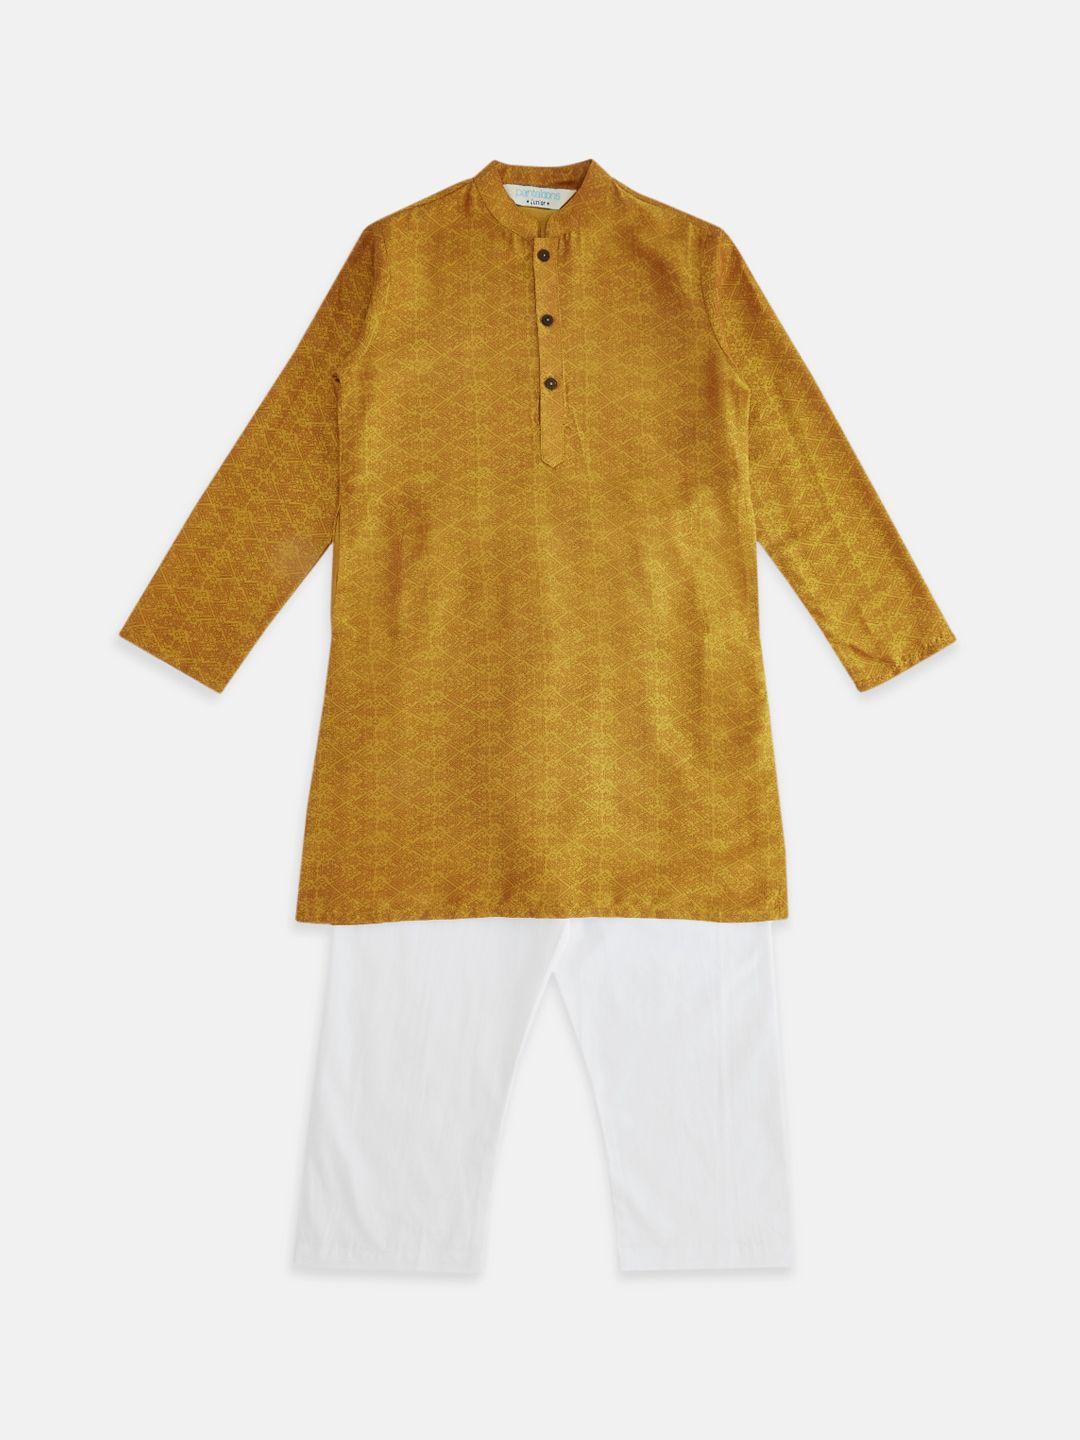 indus route by pantaloons boys mustard yellow kurta with pyjamas